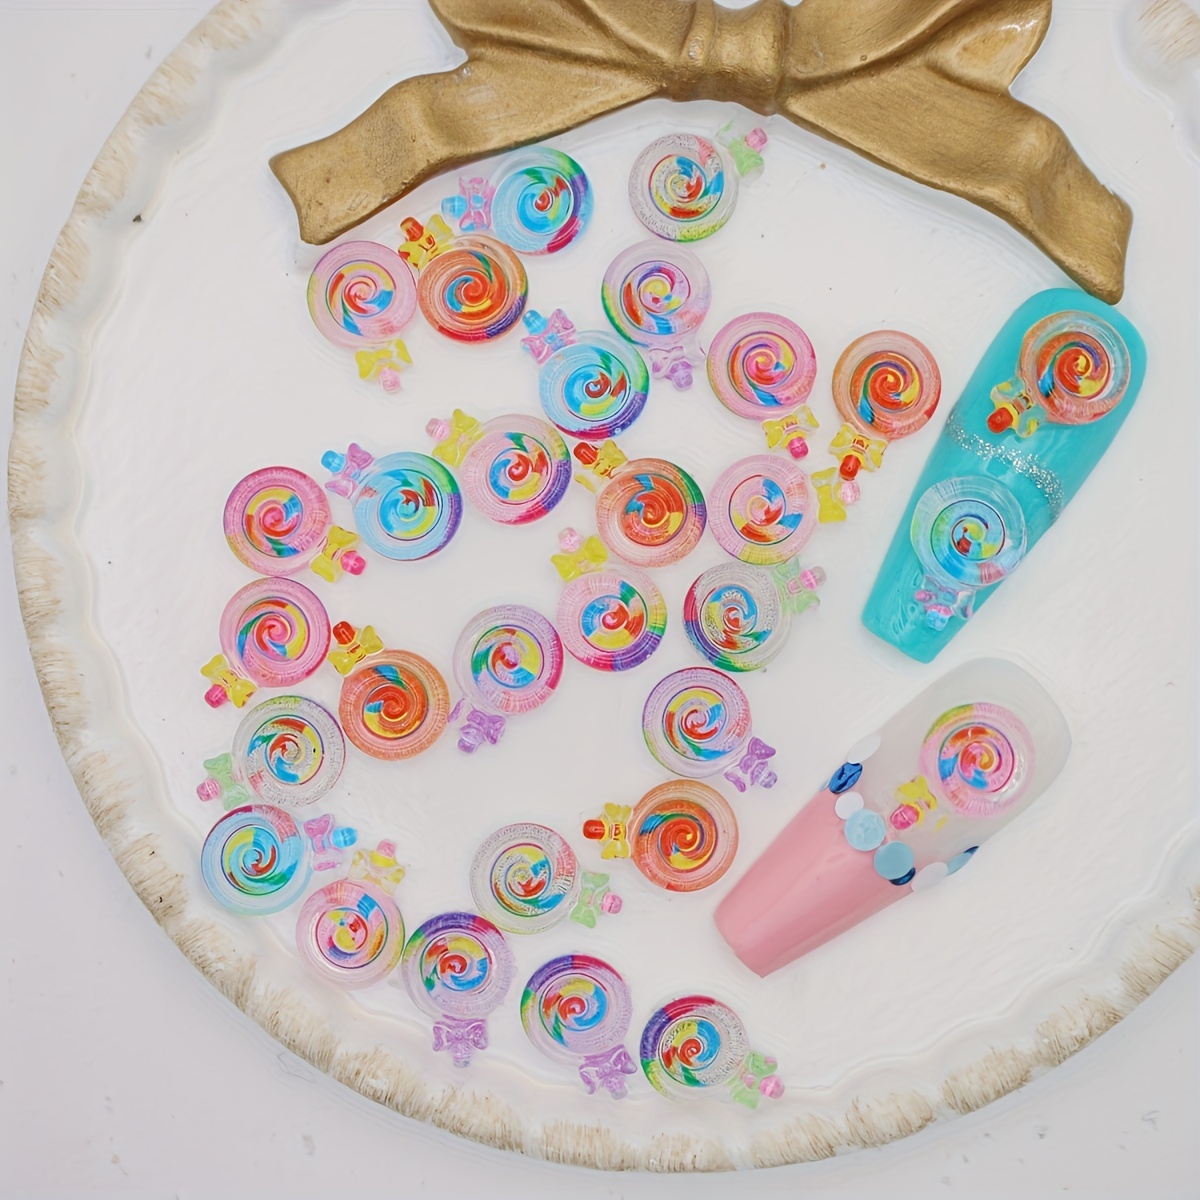 50pcs/Bag 3D Colorful Lollipop Charms for Nail Art Decorations